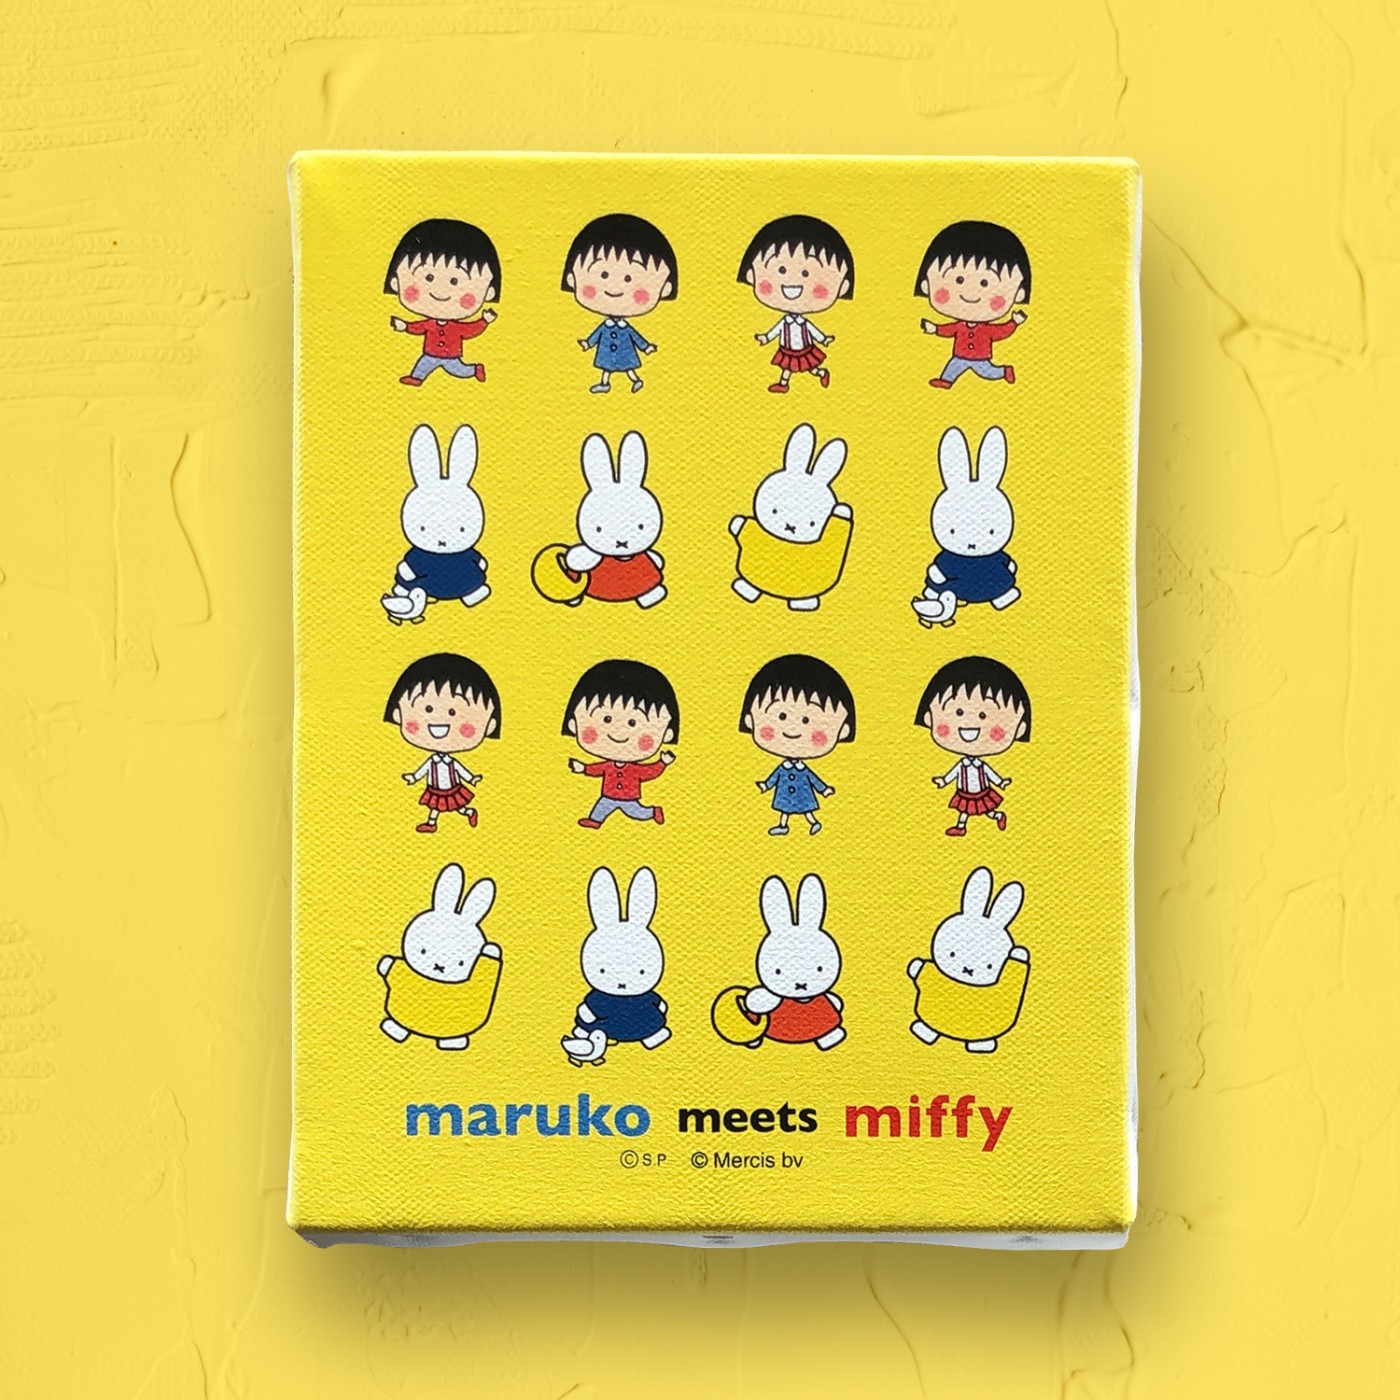 「ちびまる子ちゃん」と「ミッフィー」のコラボレーション「maruko meets miffy」